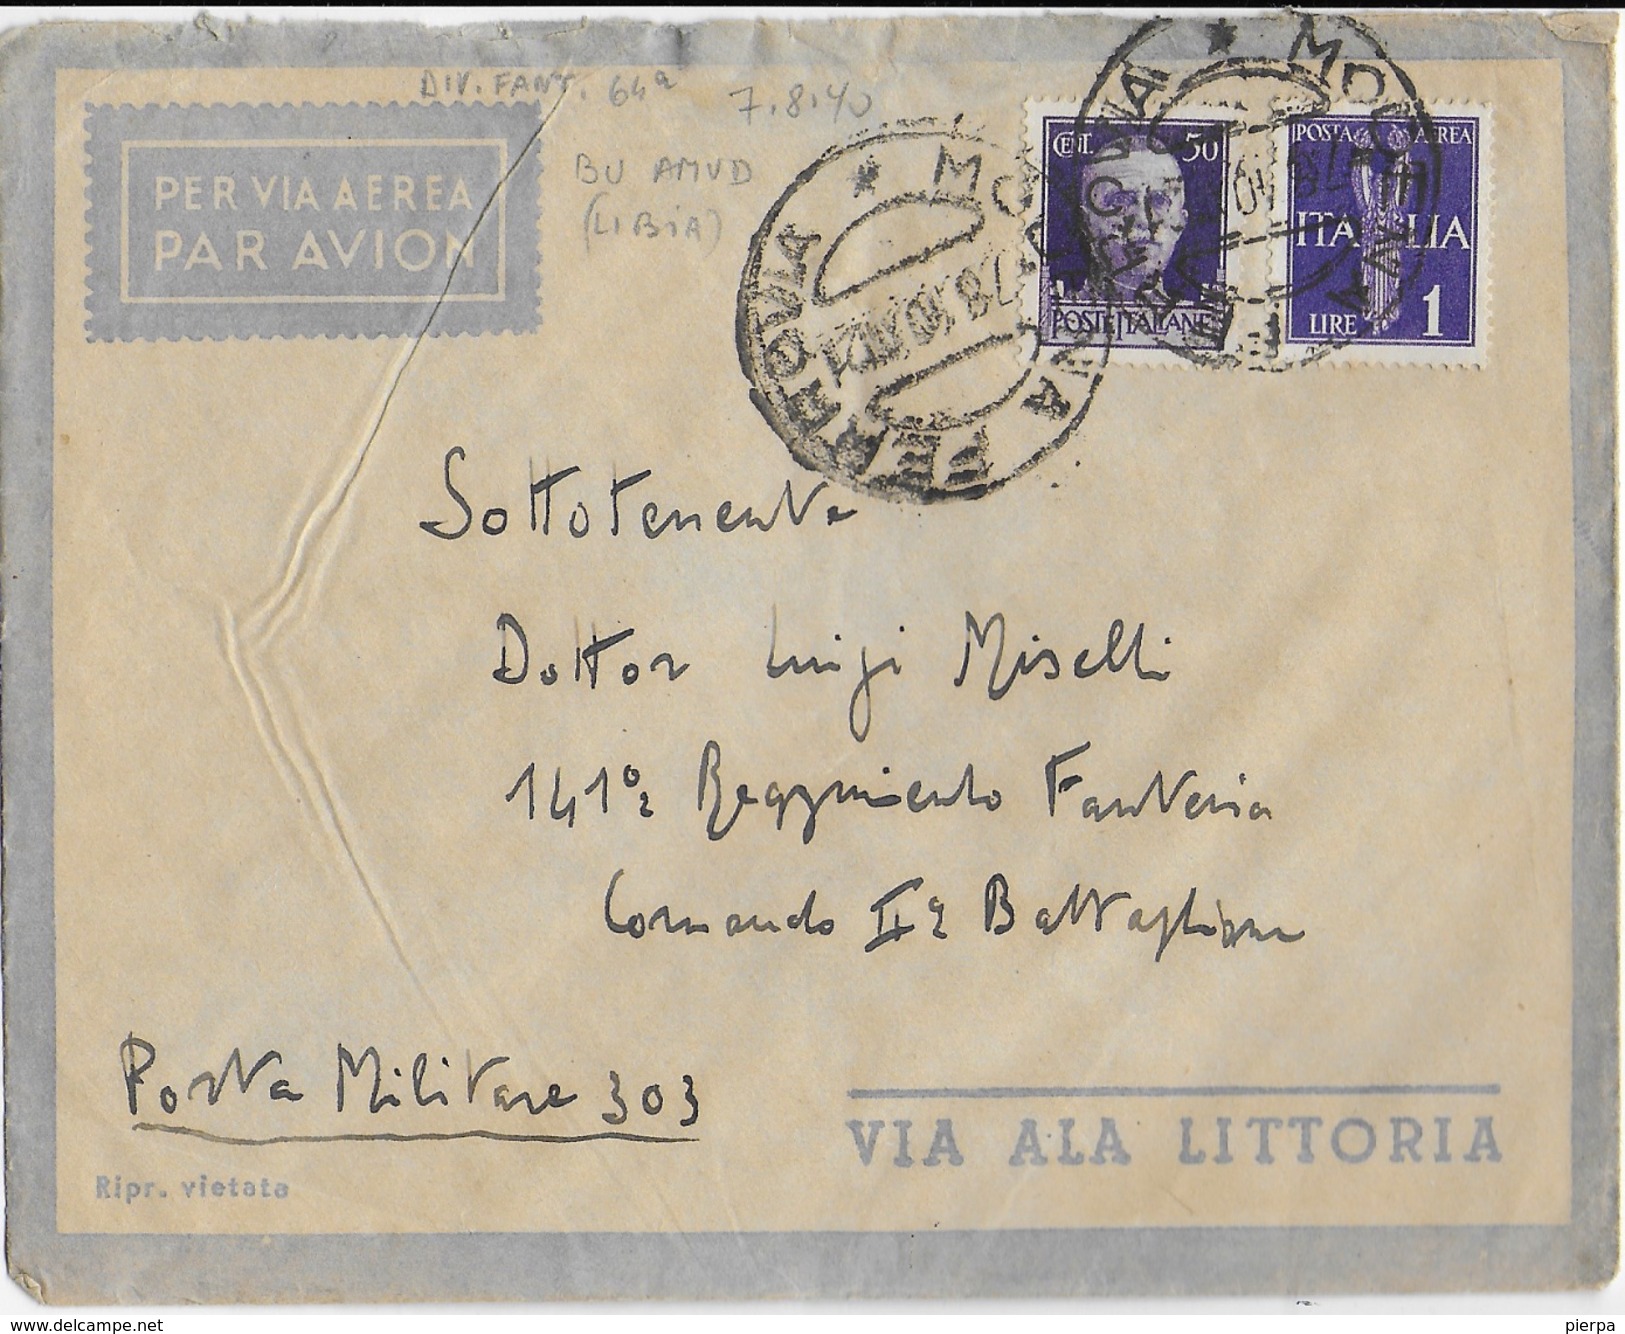 STORIA POSTALE REGNO - BUSTA ALA LITTORIA DIRETTA A MILITARE IN LIBIA 1940 PER VIA AEREA PM 303 - Poststempel (Flugzeuge)